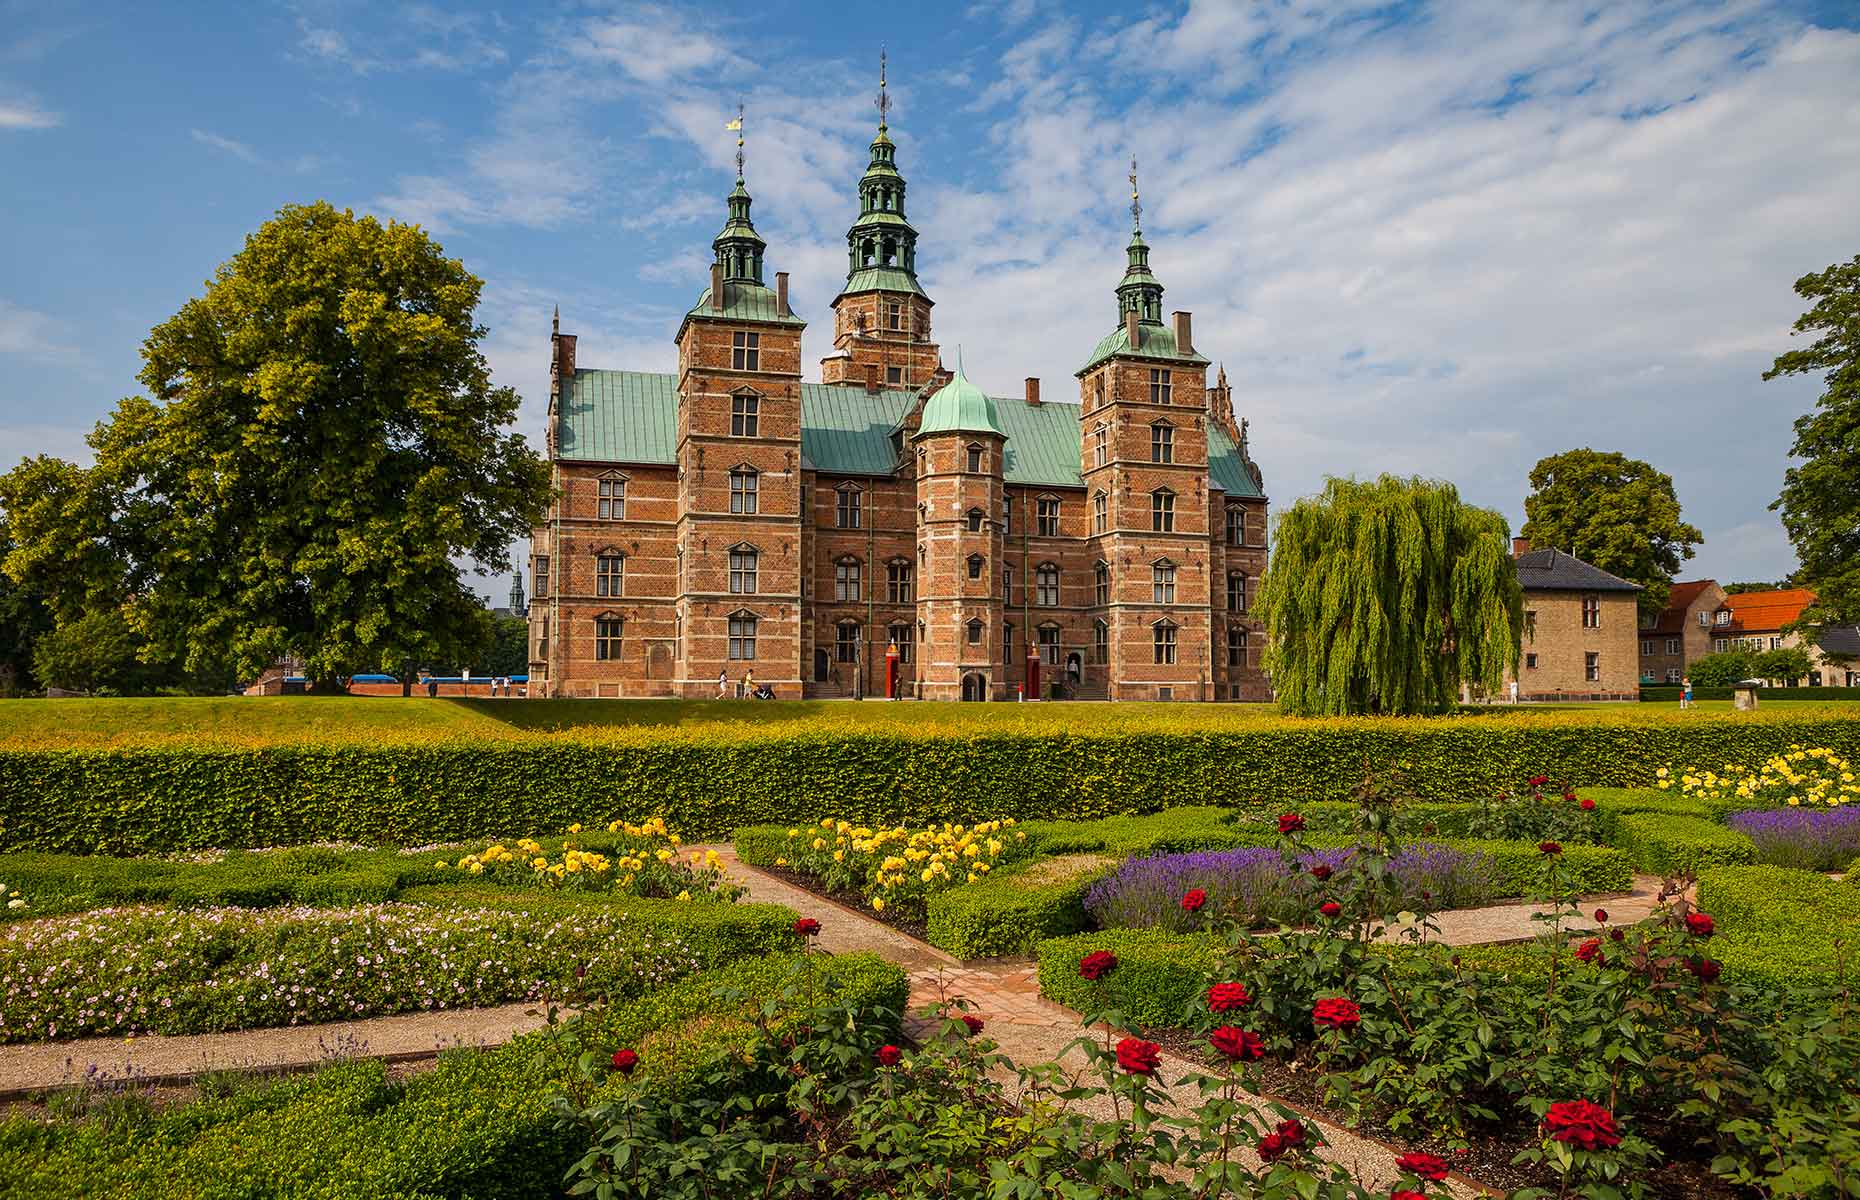 Rosenborg Castle, Copenhagen (Image: Yegorovnick/Shutterstock)